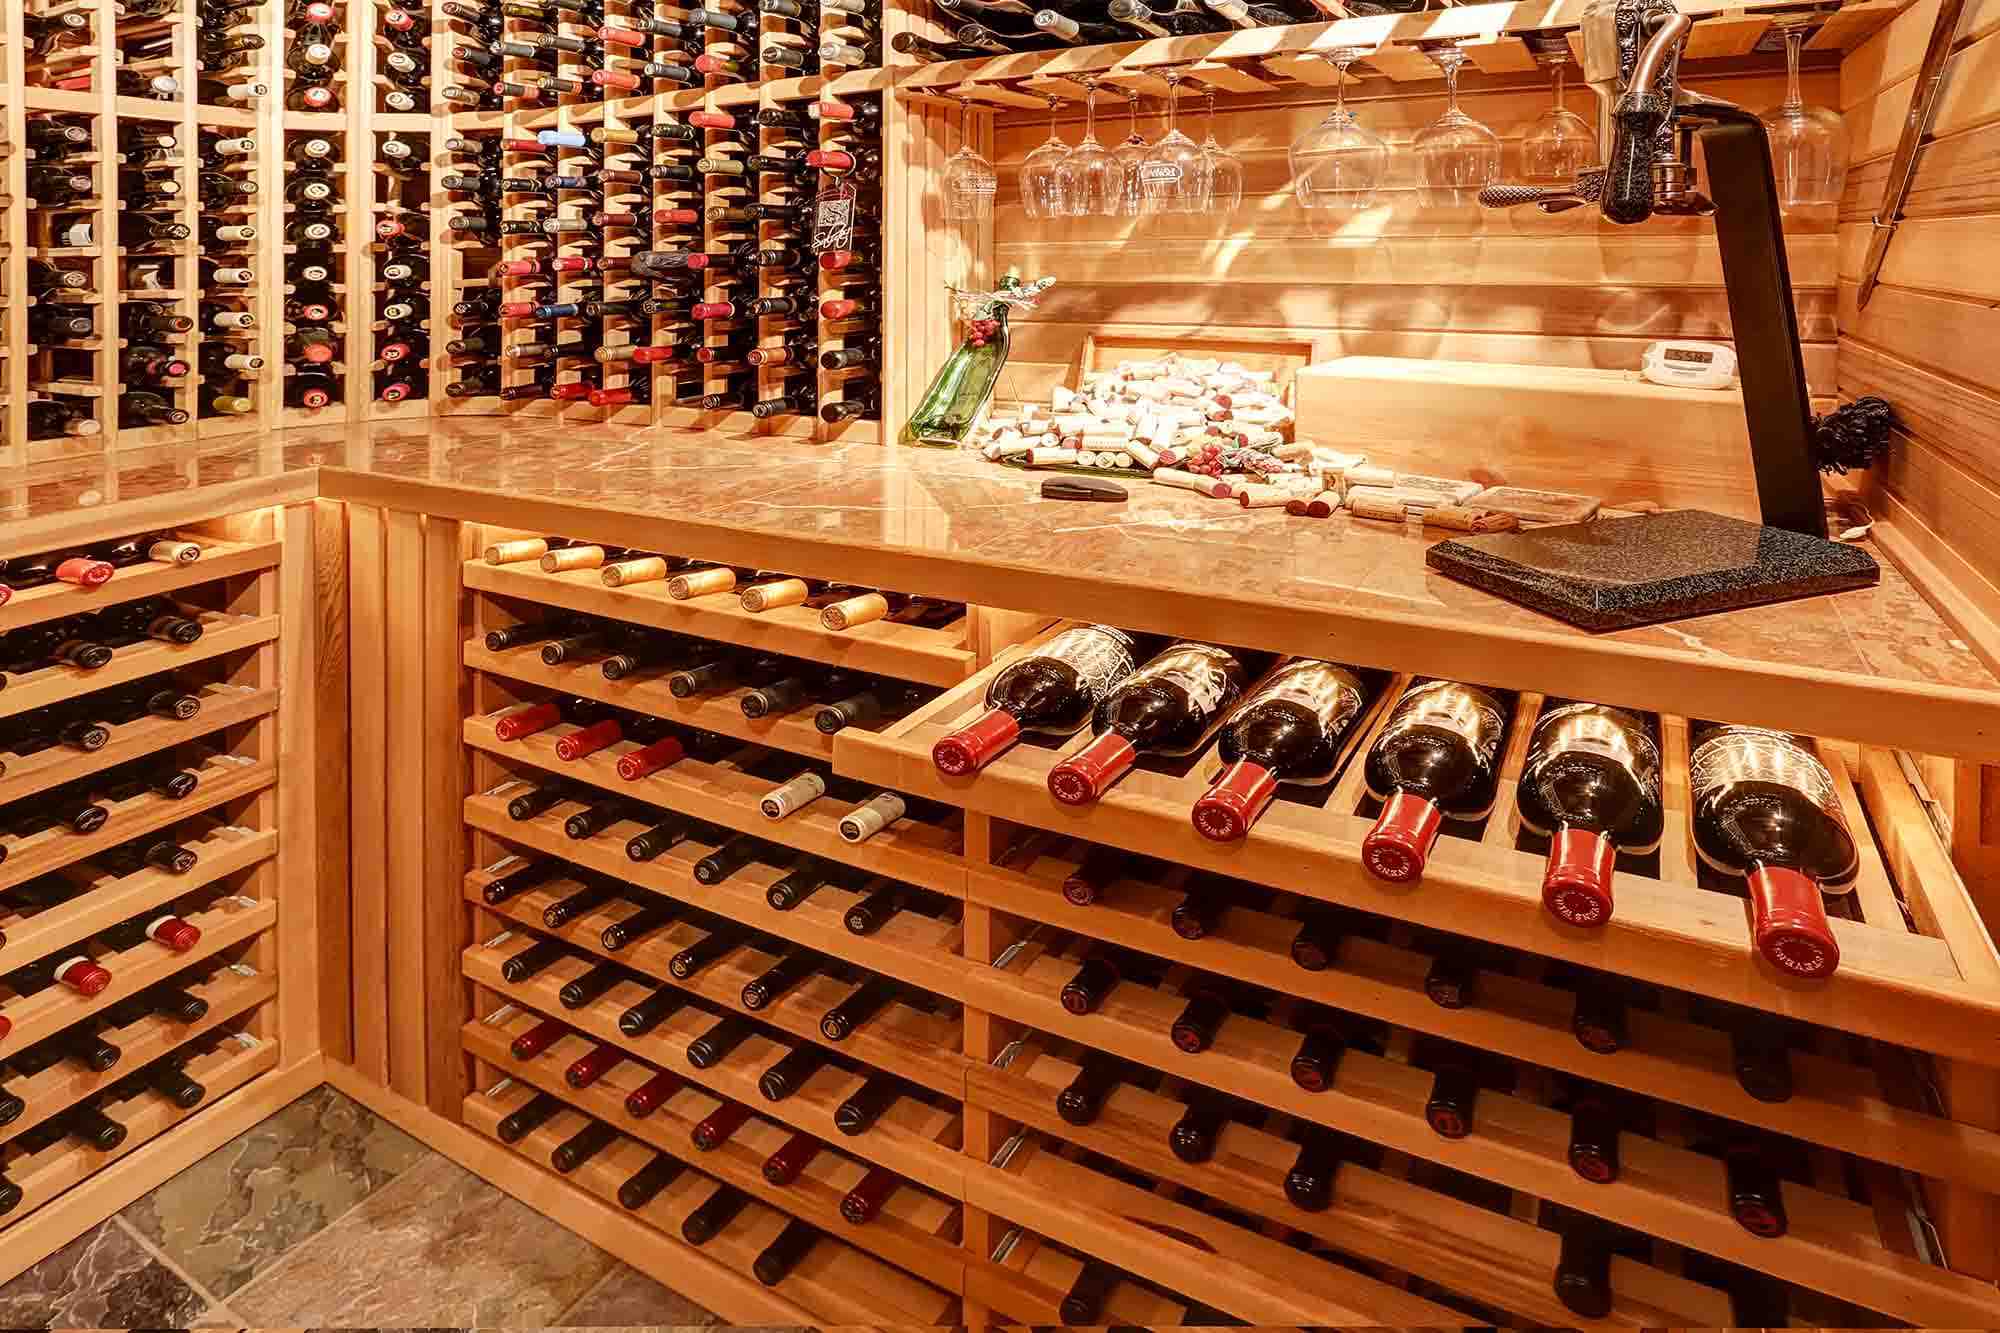 Comment conserver les bouteilles dans une cave à vin?